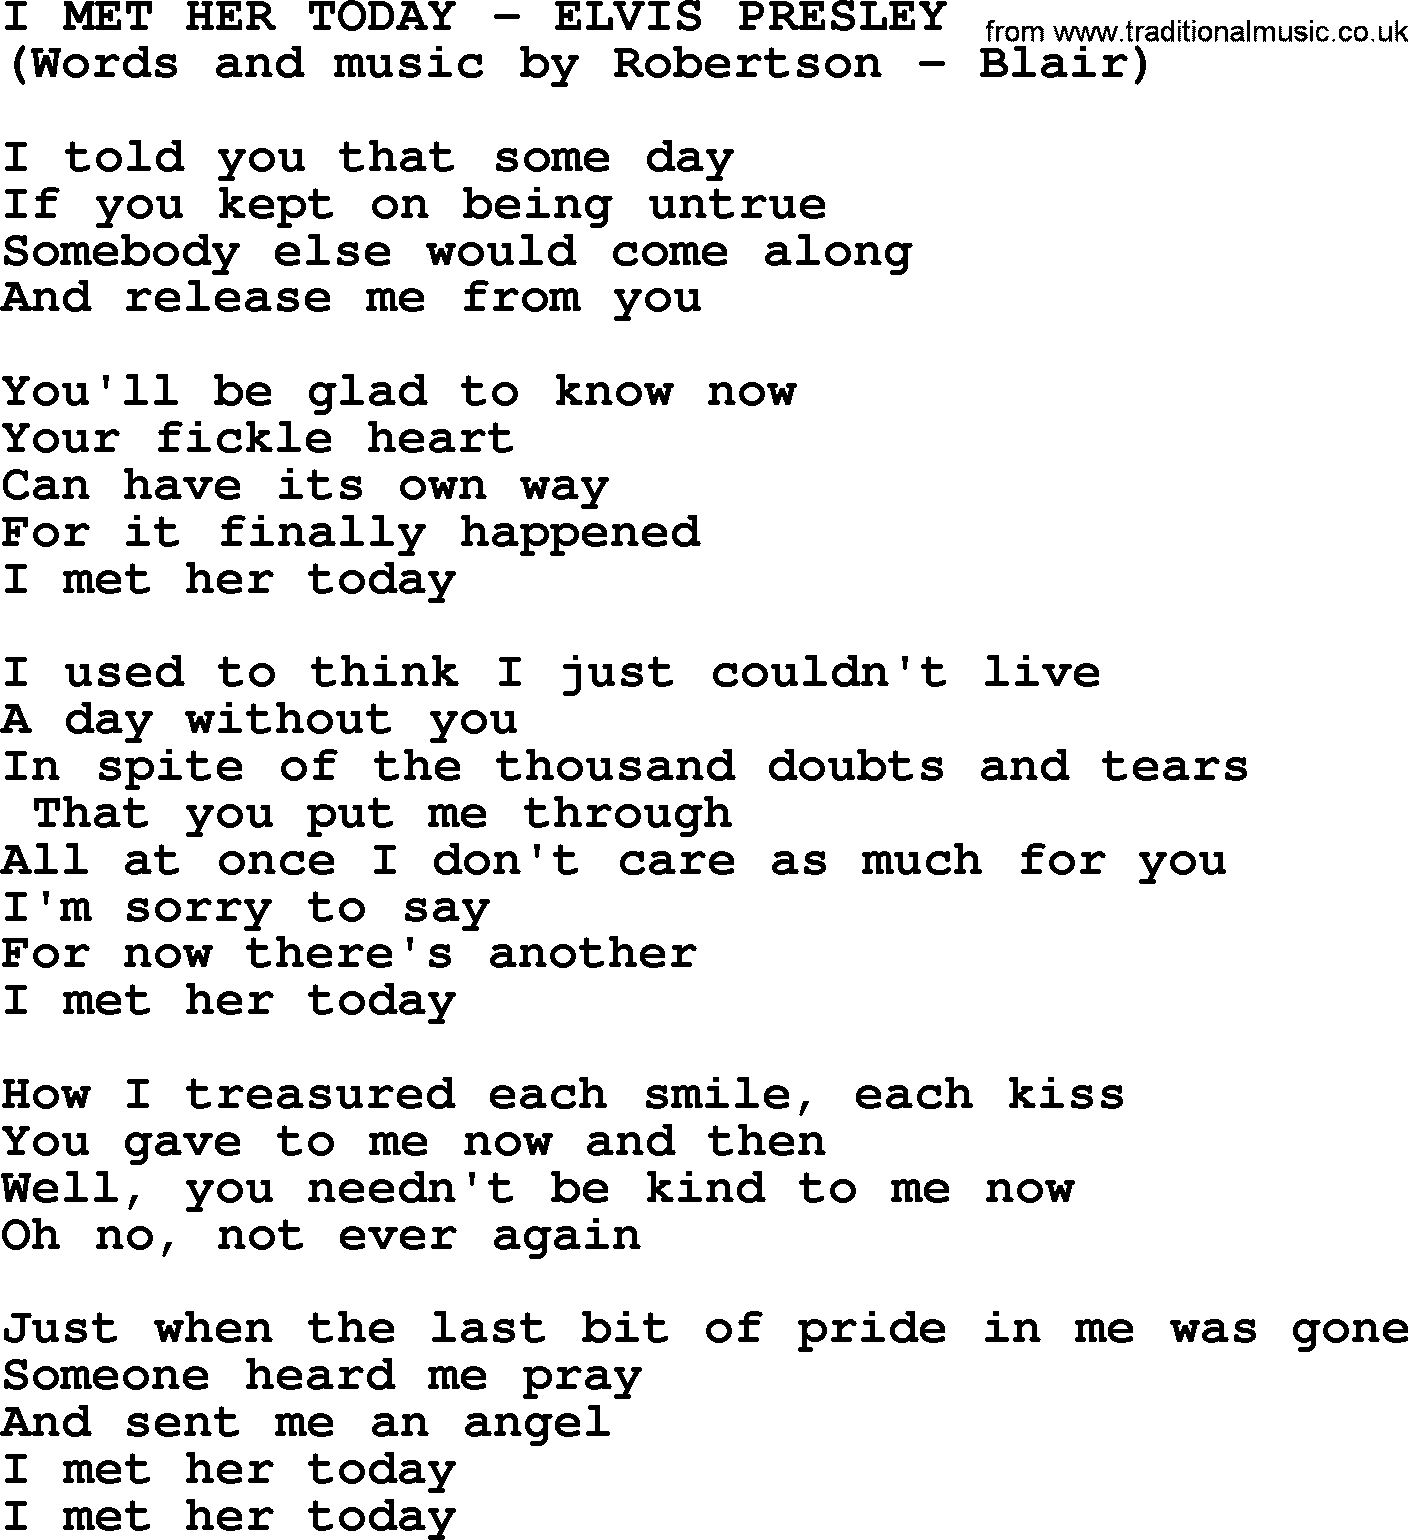 Elvis Presley song: I Met Her Today lyrics